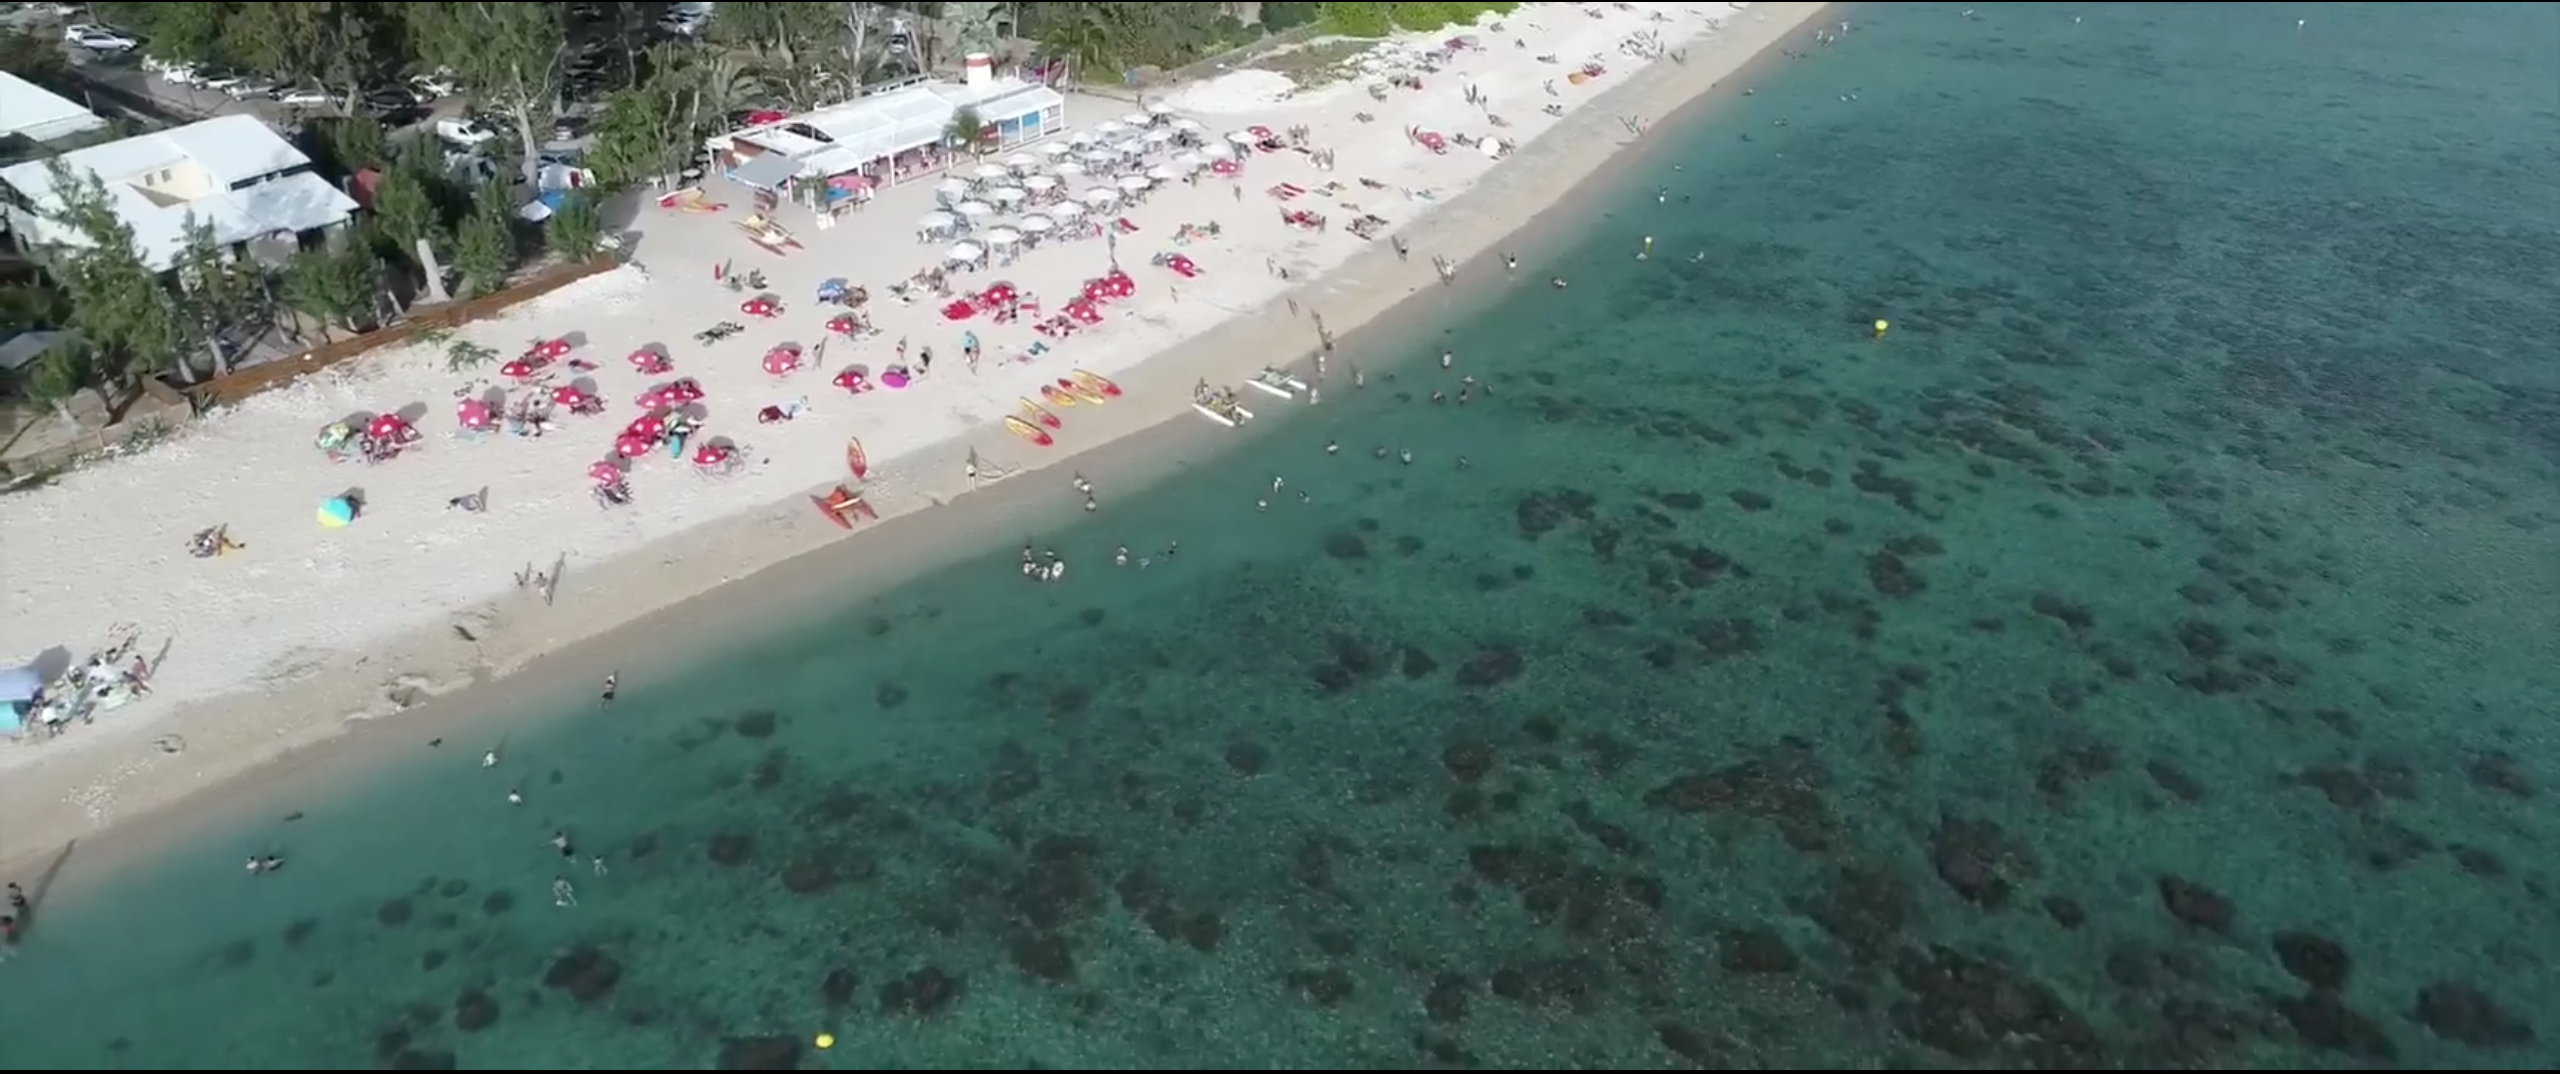 Fly Over the Island – Vidéo de la Réunion vue d’en haut